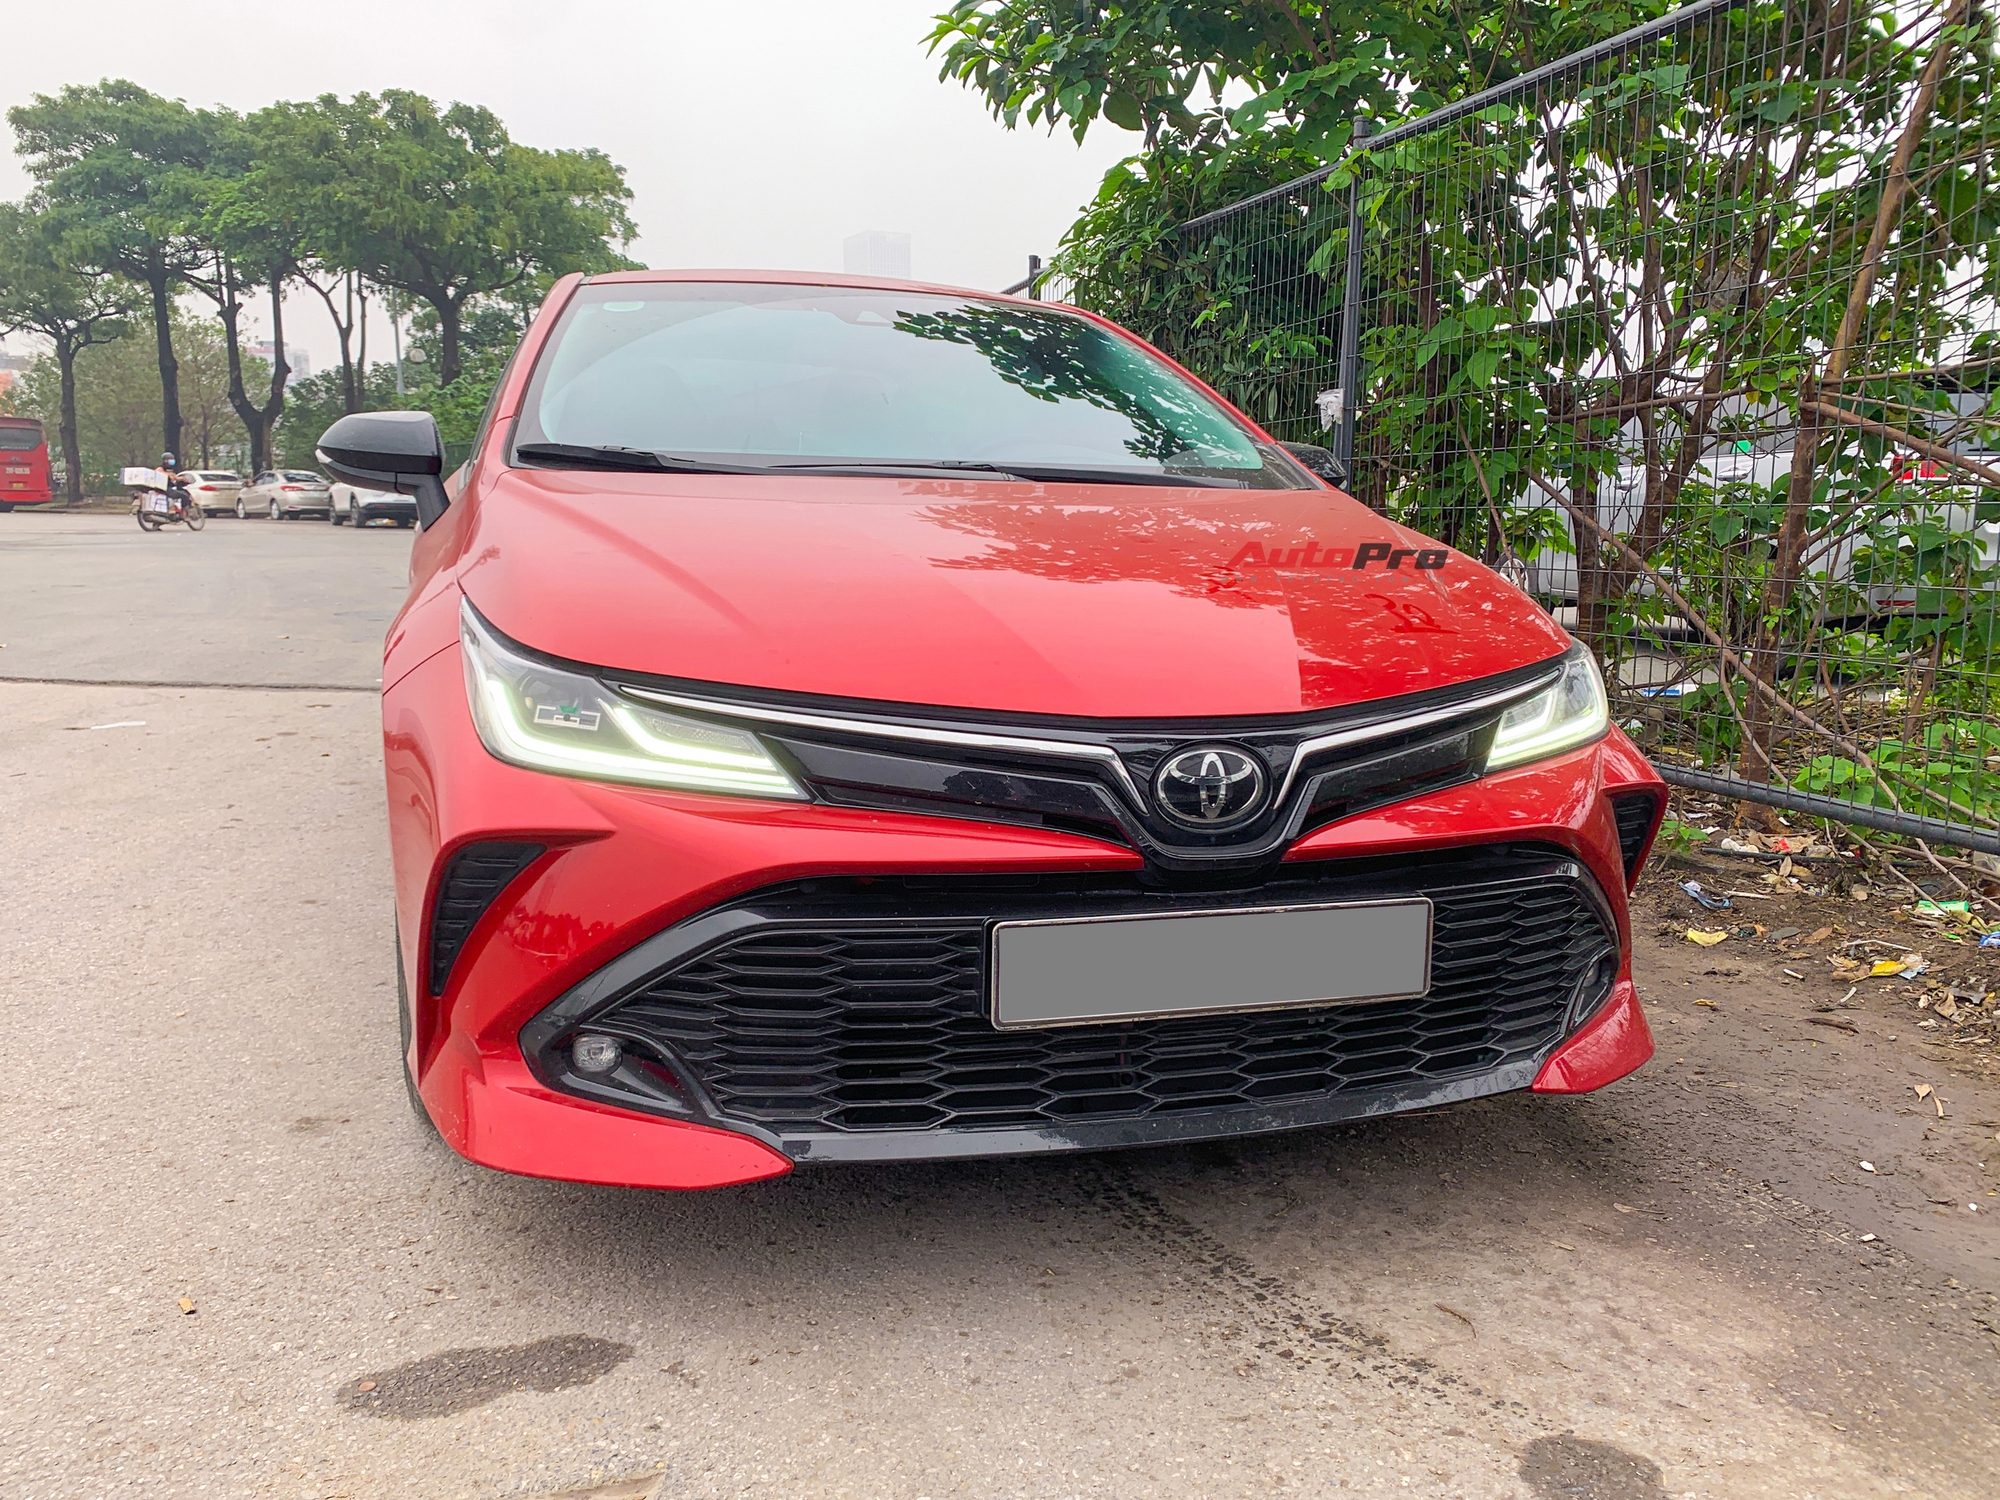 Toyota Corolla Altis GR Sport đầu tiên xuất hiện tại Việt Nam: Ngoại hình hầm hố khác hẳn phong cách ‘doanh nhân’, đấu Civic RS- Ảnh 5.